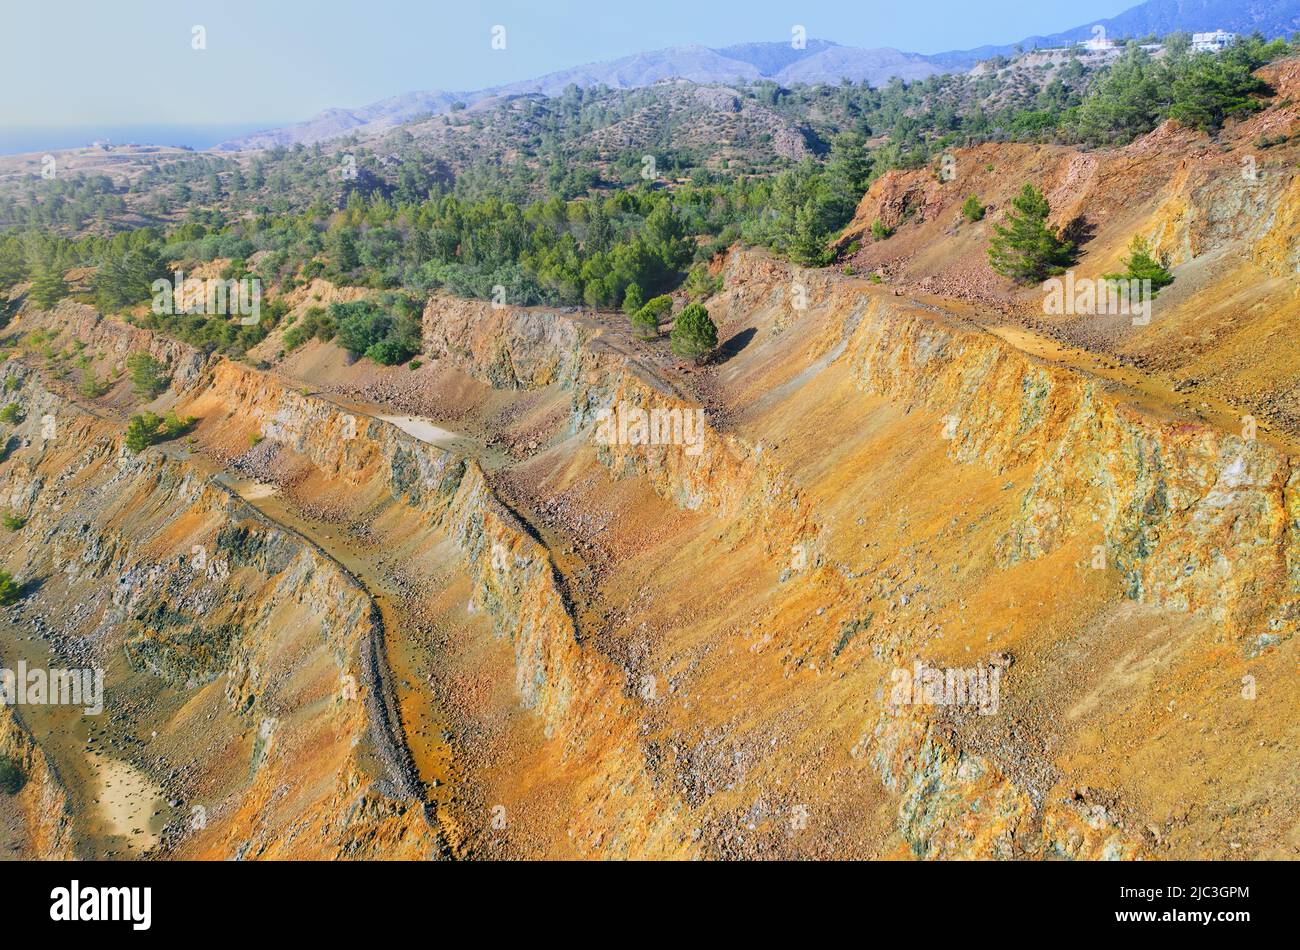 Reforestación de la antigua mina a cielo abierto. Pinos que crecen en la pared escalonada de mina de sulfuros abandonada en Limni, Chipre Foto de stock